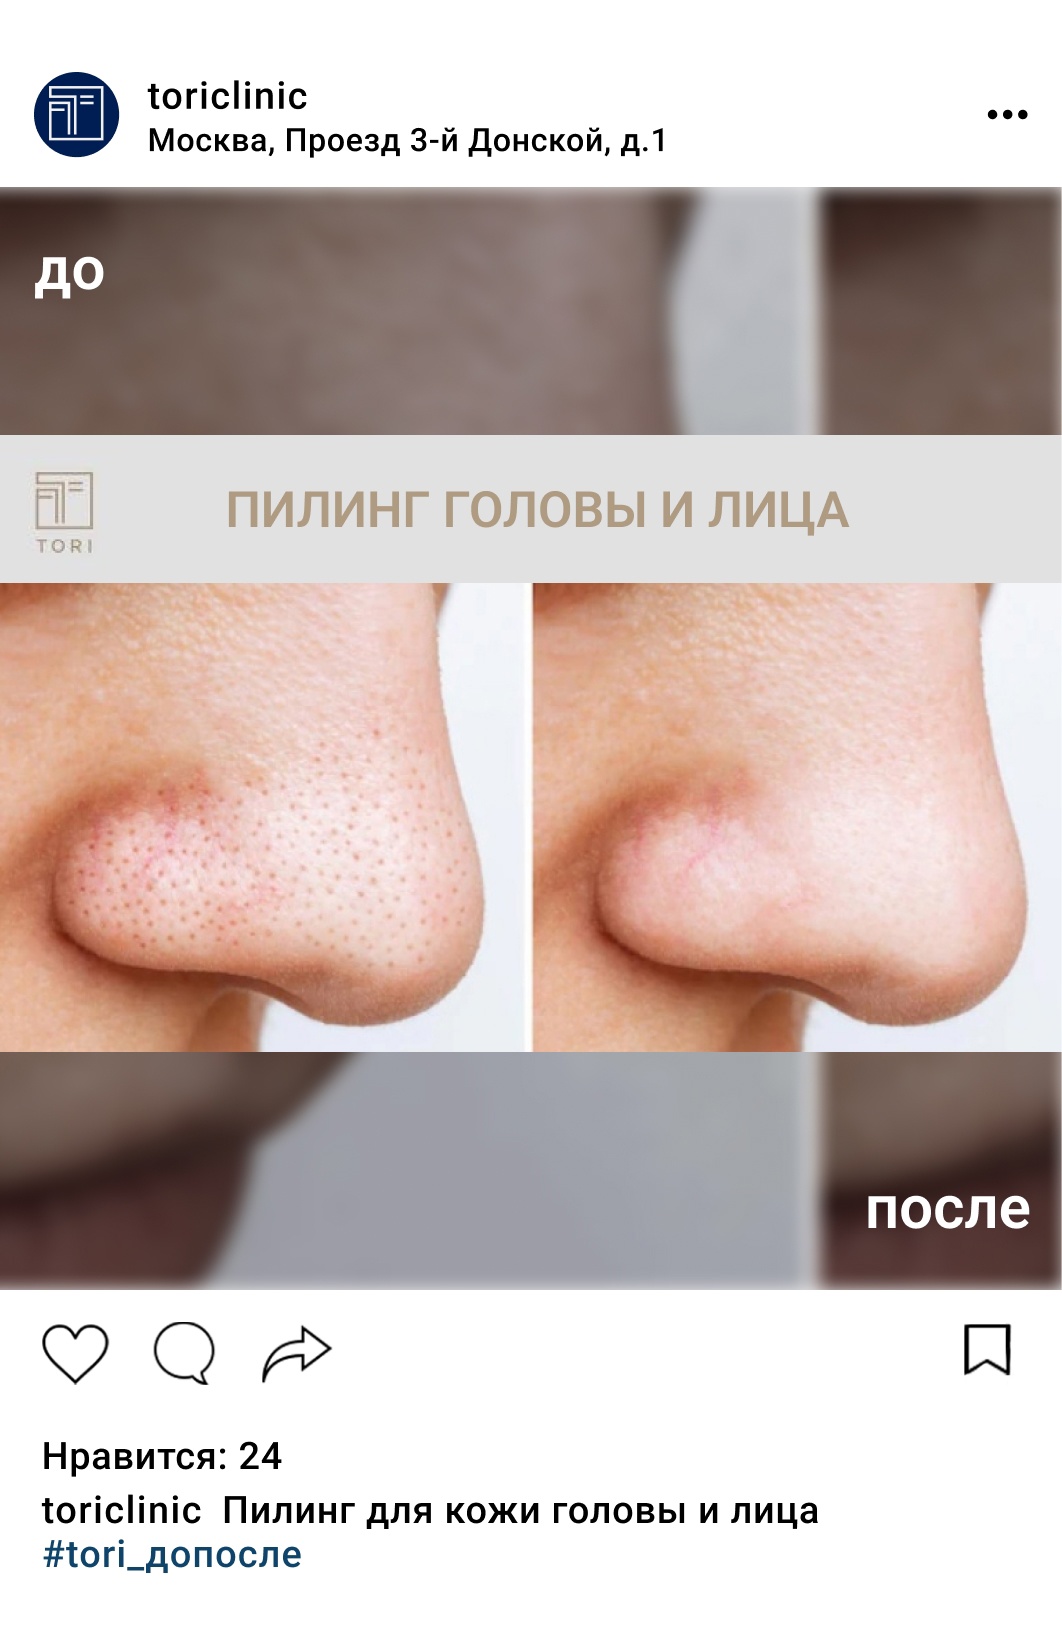 Пилинг (чистка) для кожи головы, цены в Москве